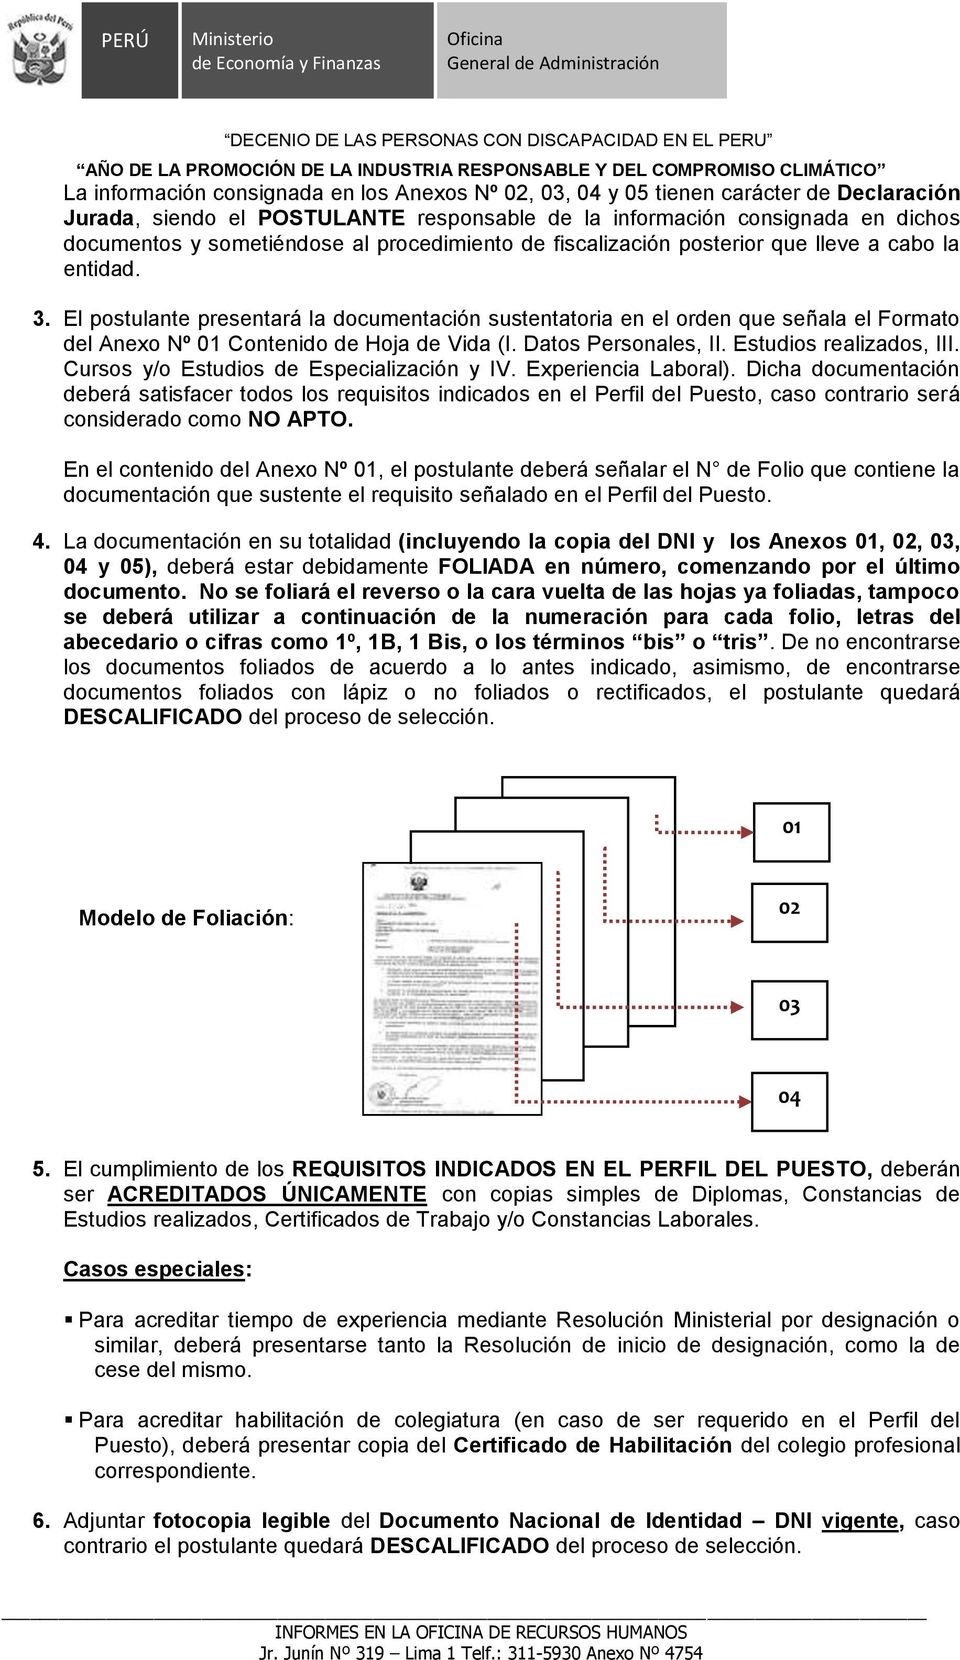 Dats Persnales, II. Estudis realizads, III. Curss y/ Estudis de Especialización y IV. Experiencia Labral).